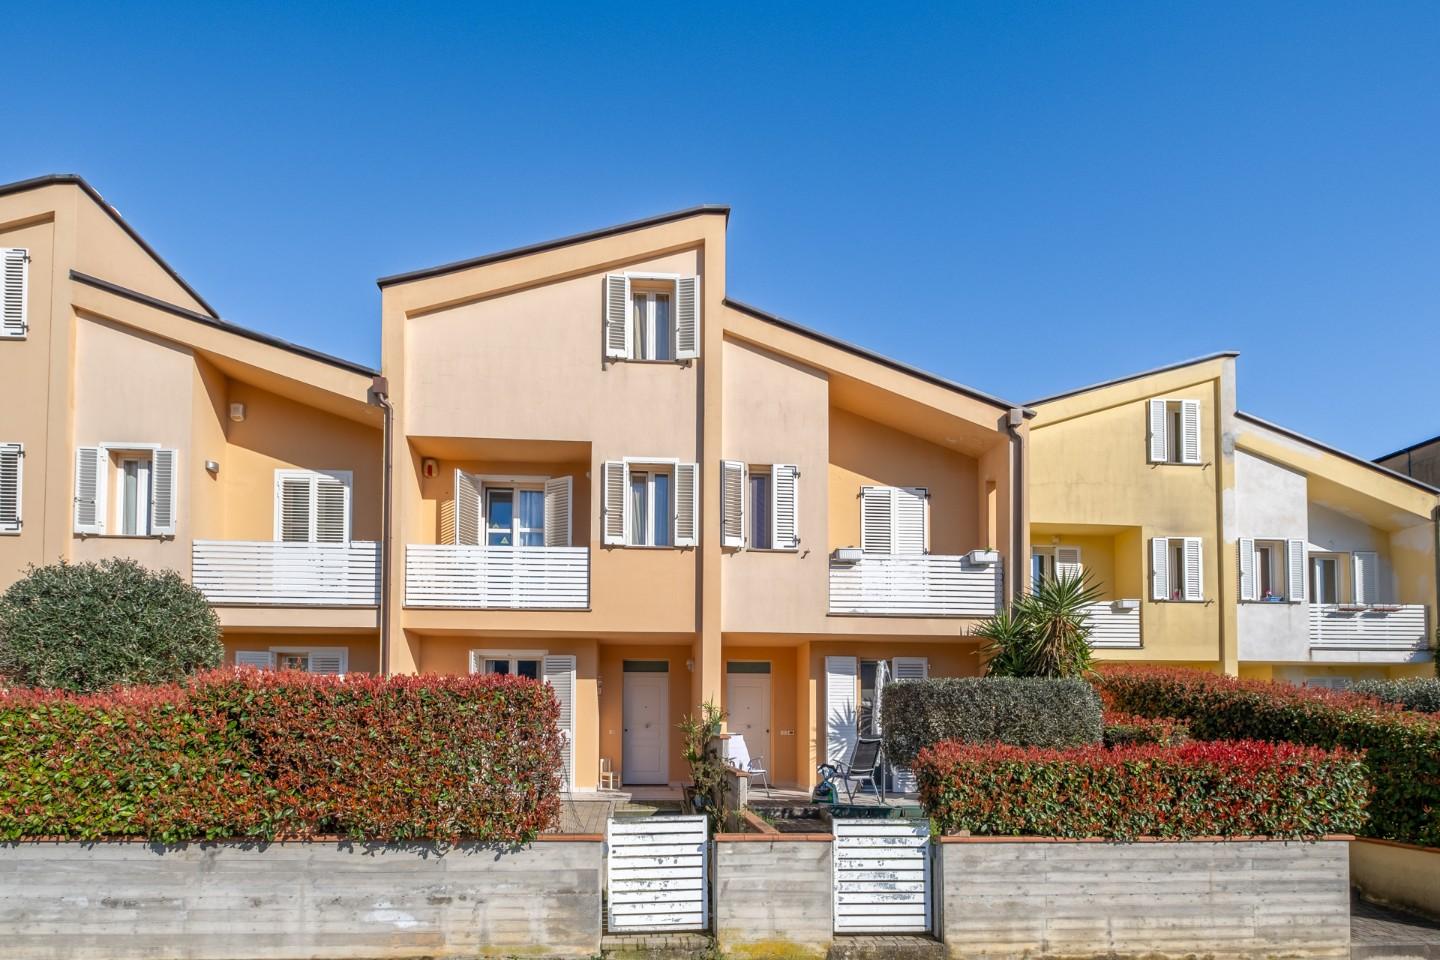 Villa a Schiera in vendita a Buti, 6 locali, prezzo € 295.000 | PortaleAgenzieImmobiliari.it